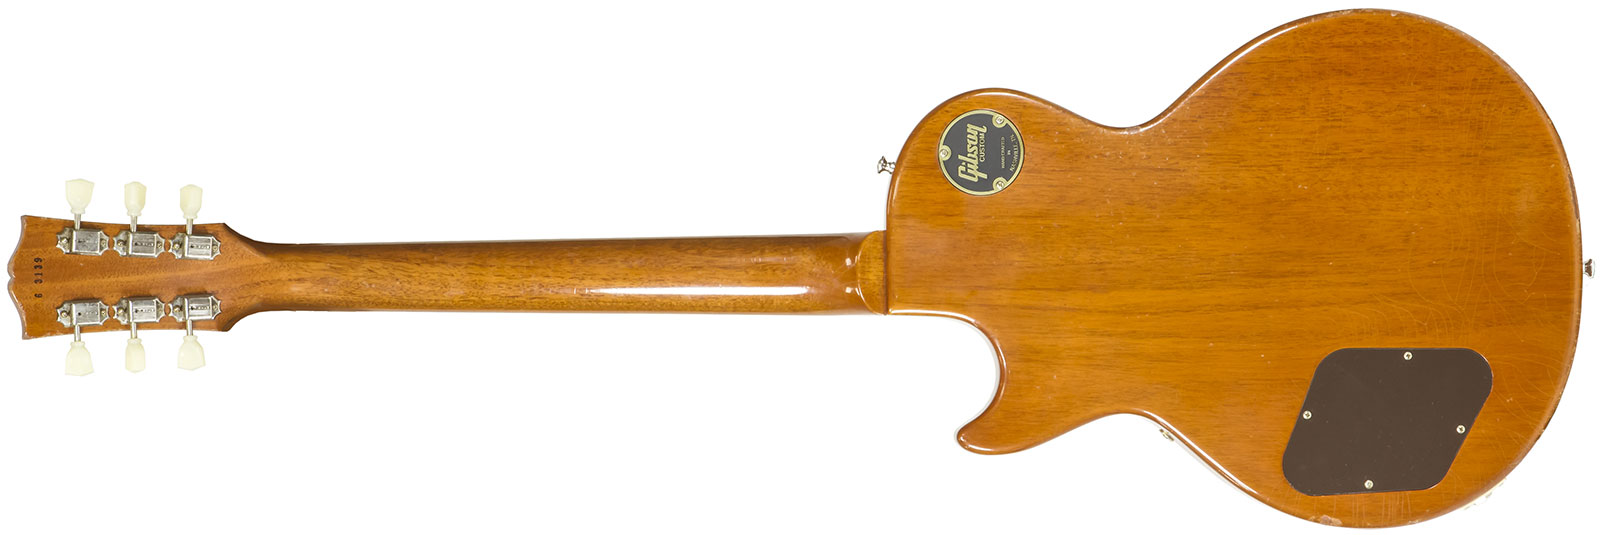 Gibson Custom Shop M2m Les Paul 1956 2h Ht Rw #63139 - Murphy Lab Light Aged Antique Gold - Guitare Électrique Single Cut - Variation 1